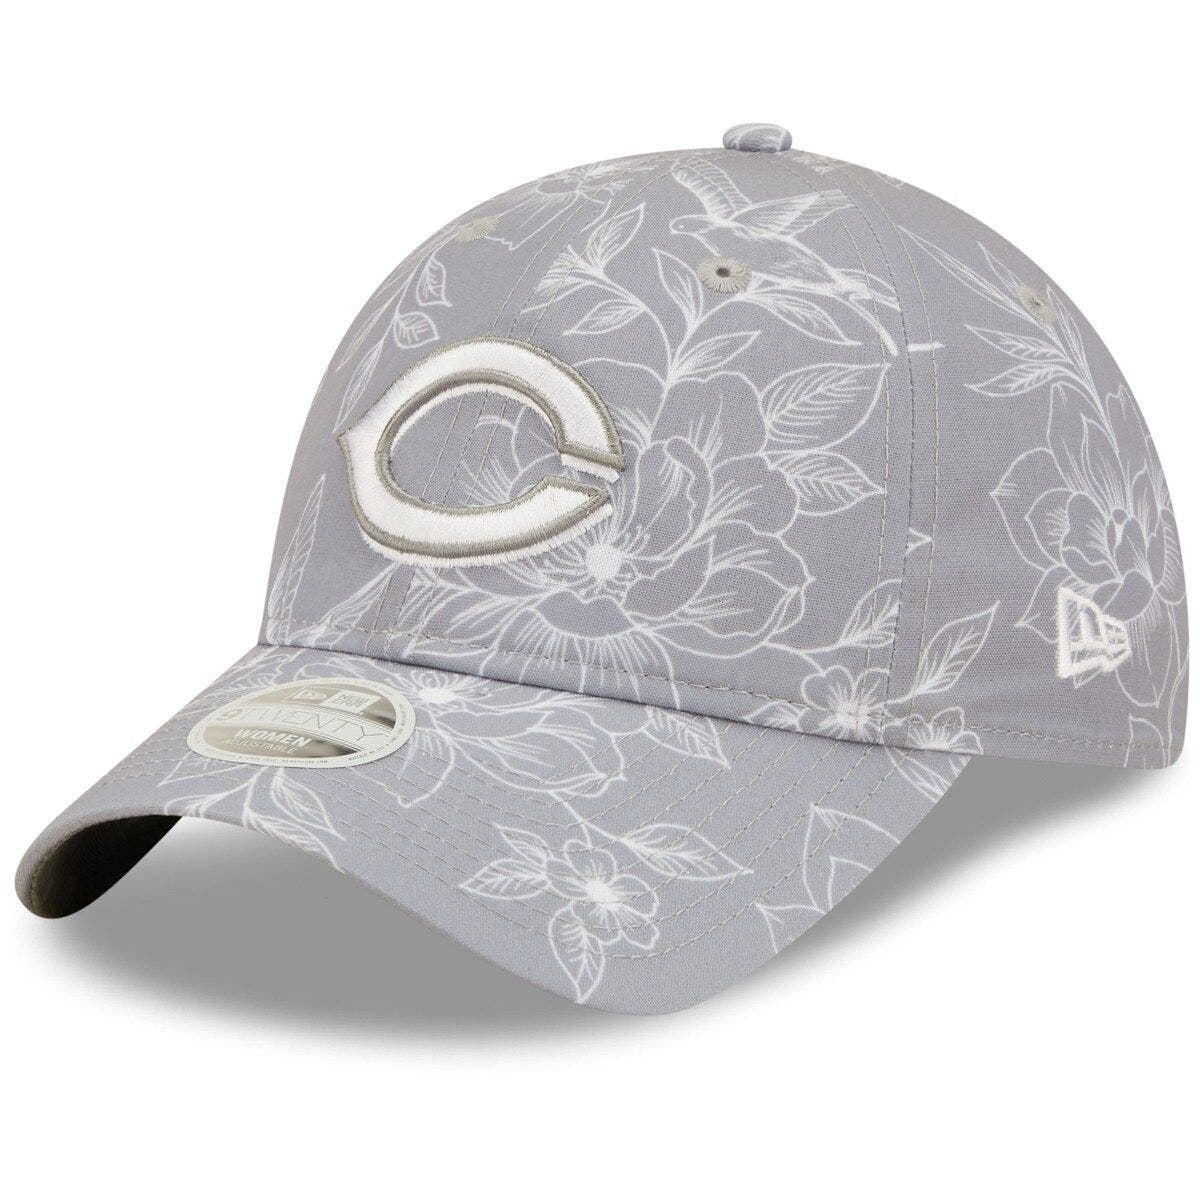 Penguin Family Adjustable Baseball Visor Cap,Mesh Hat,Men Women Athletic Hats